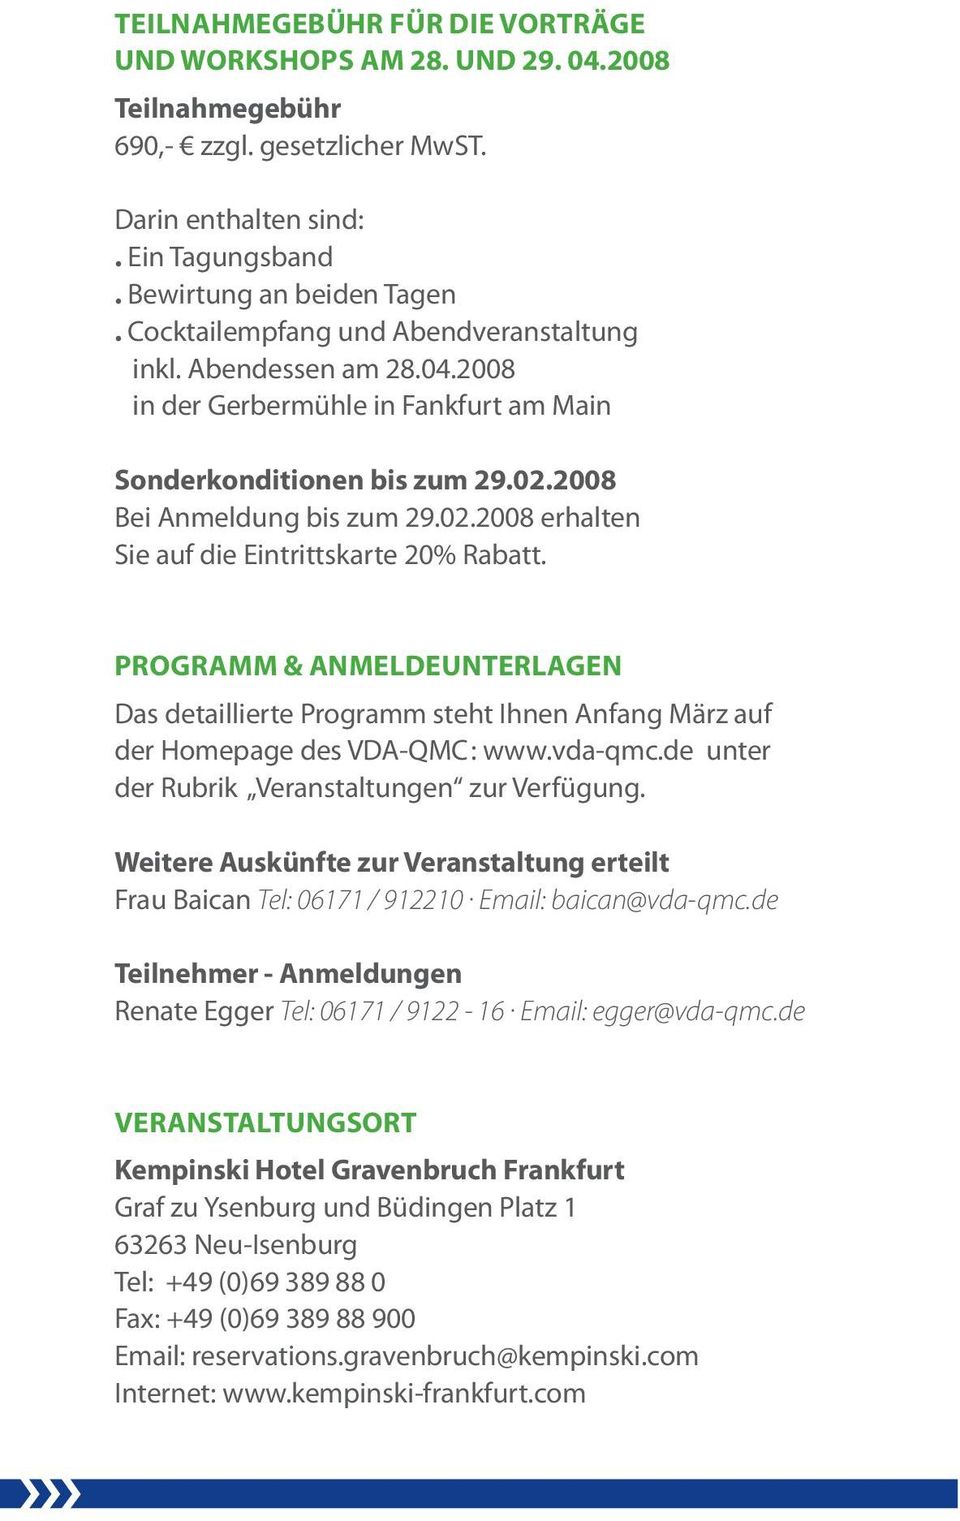 PROGRAMM & ANMELDEUNTERLAGEN Das detaillierte Programm steht Ihnen Anfang März auf der Homepage des VDA-QMC : www.vda-qmc.de unter der Rubrik Veranstaltungen zur Verfügung.